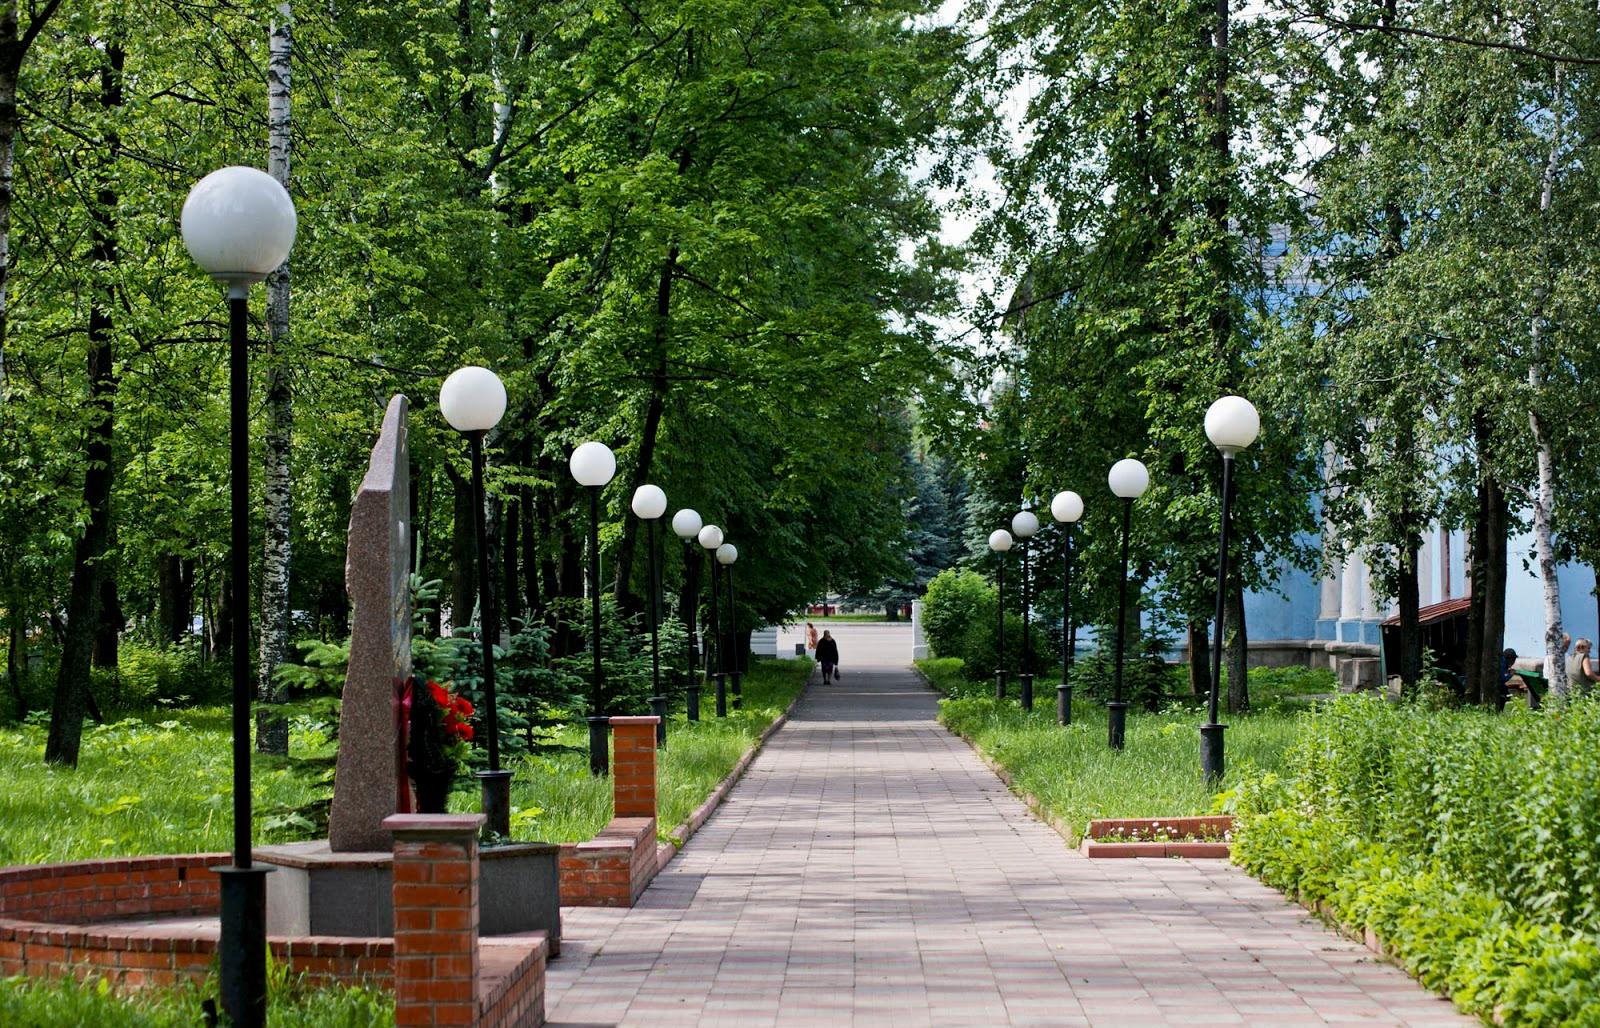 Городской сад, туристический маршрут, набережная, парк и площадь — пять проектов Тверской области представлены на конкурс по созданию комфортной городской среды